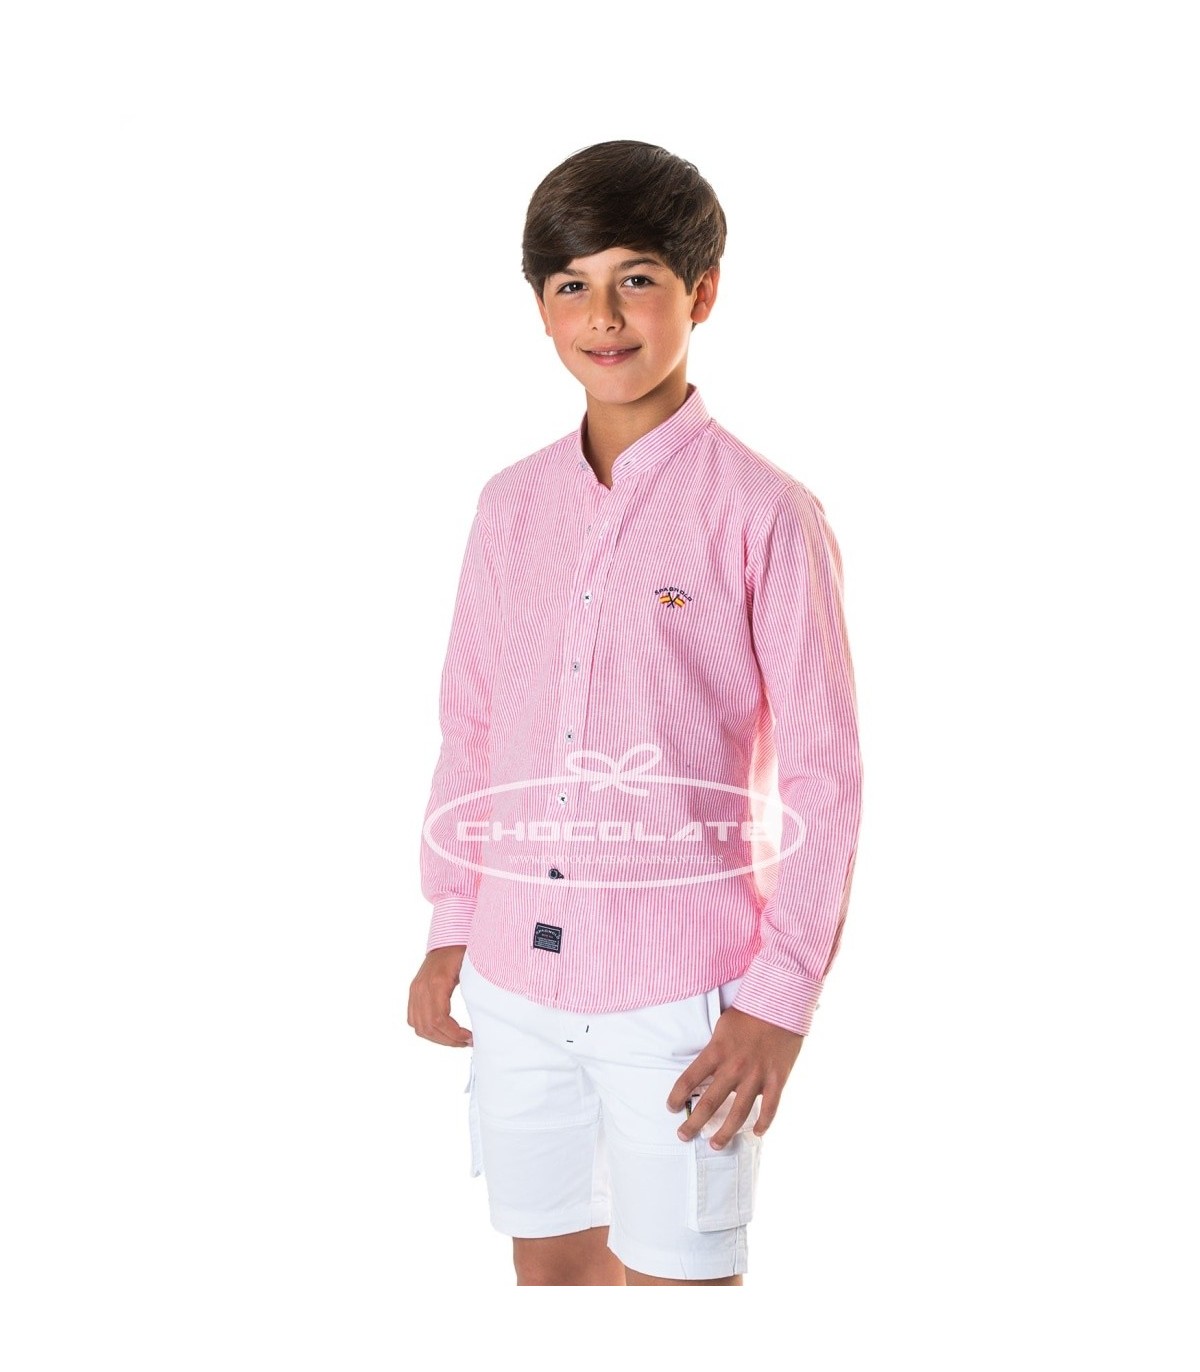 A bordo regla Irónico Camisa niño en lino de rayas rosas de Spganolo Talla 6 años